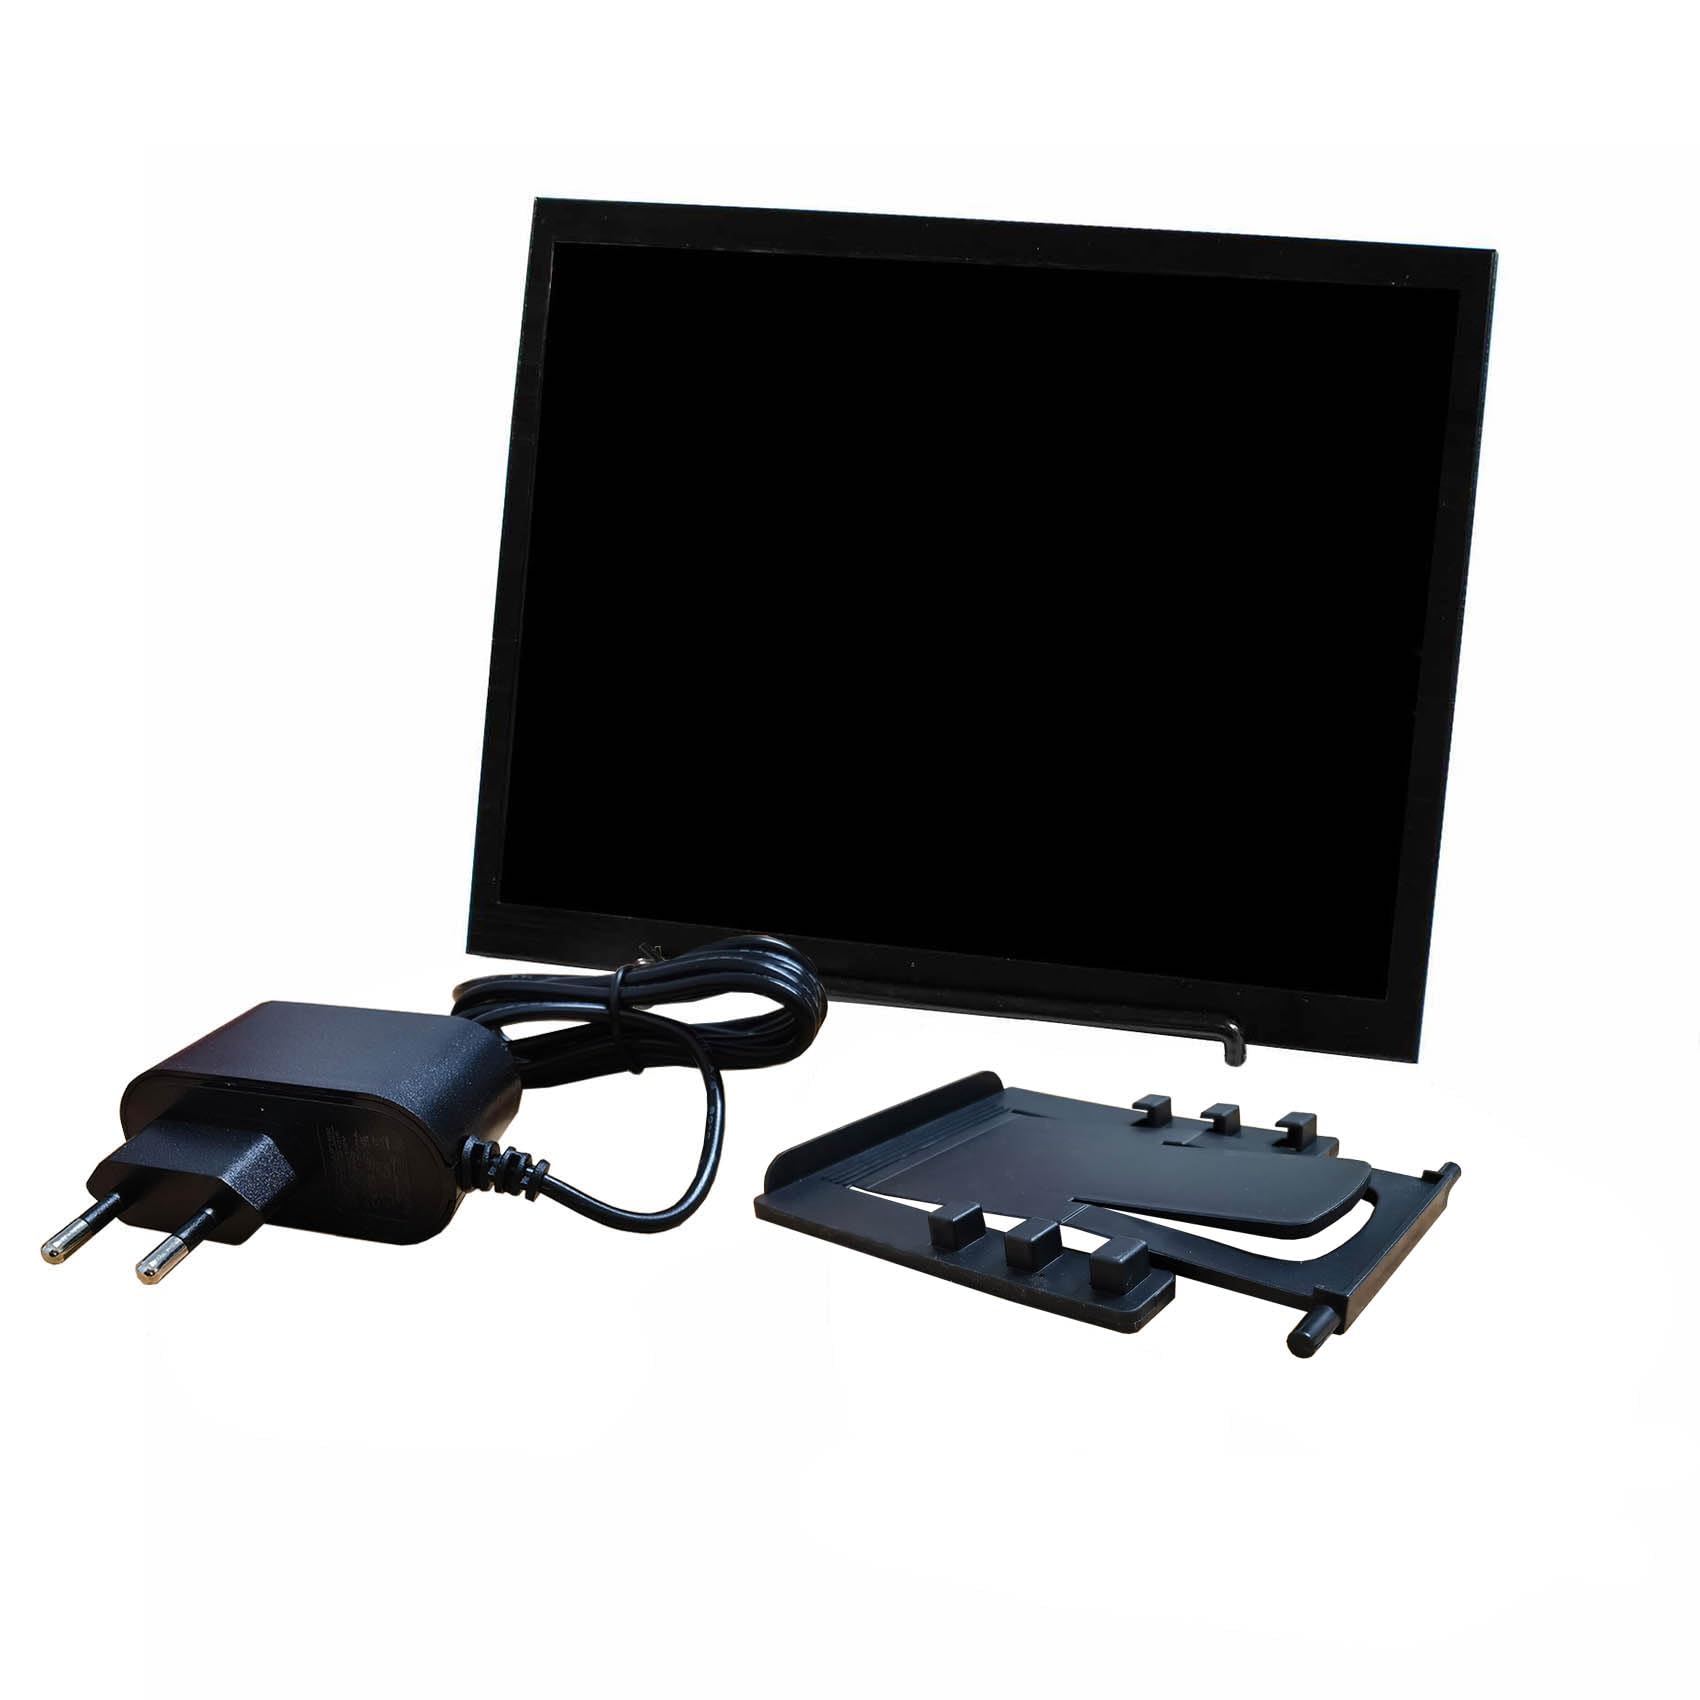 VSDISPLAY 9.7 inch Portable HD-MI LCD Monitor 2048x1536 2K IPS Display with HD-MI Mini HD-MI Video Input,Built in Dual Speaker,Support 180° Image Rotatio